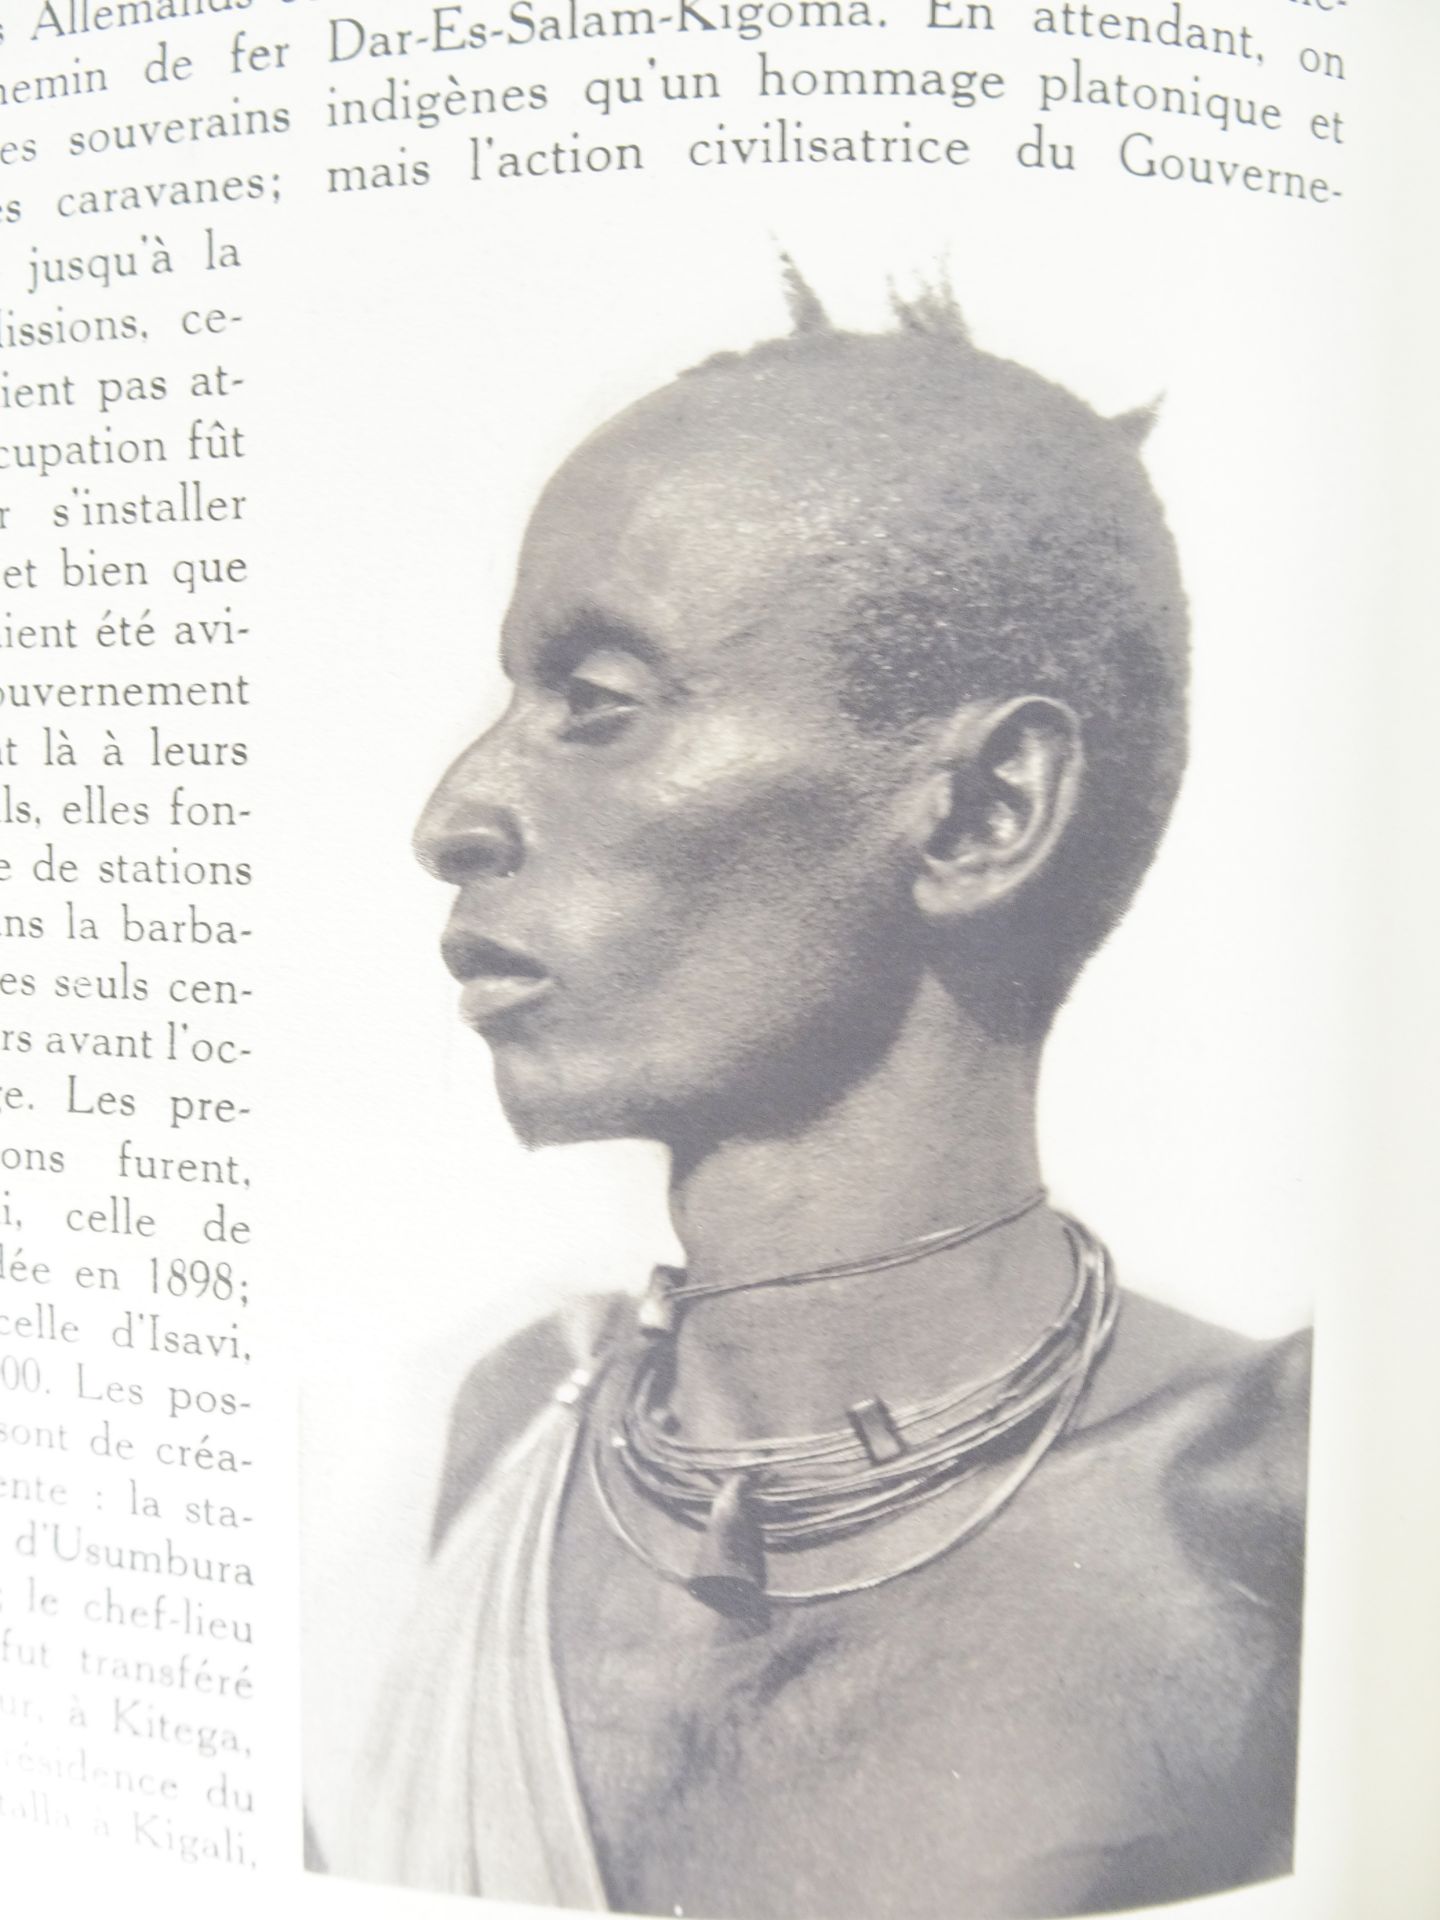 |Colonialisme| "Le Miroir du Congo Belge", 1929 - Image 12 of 18